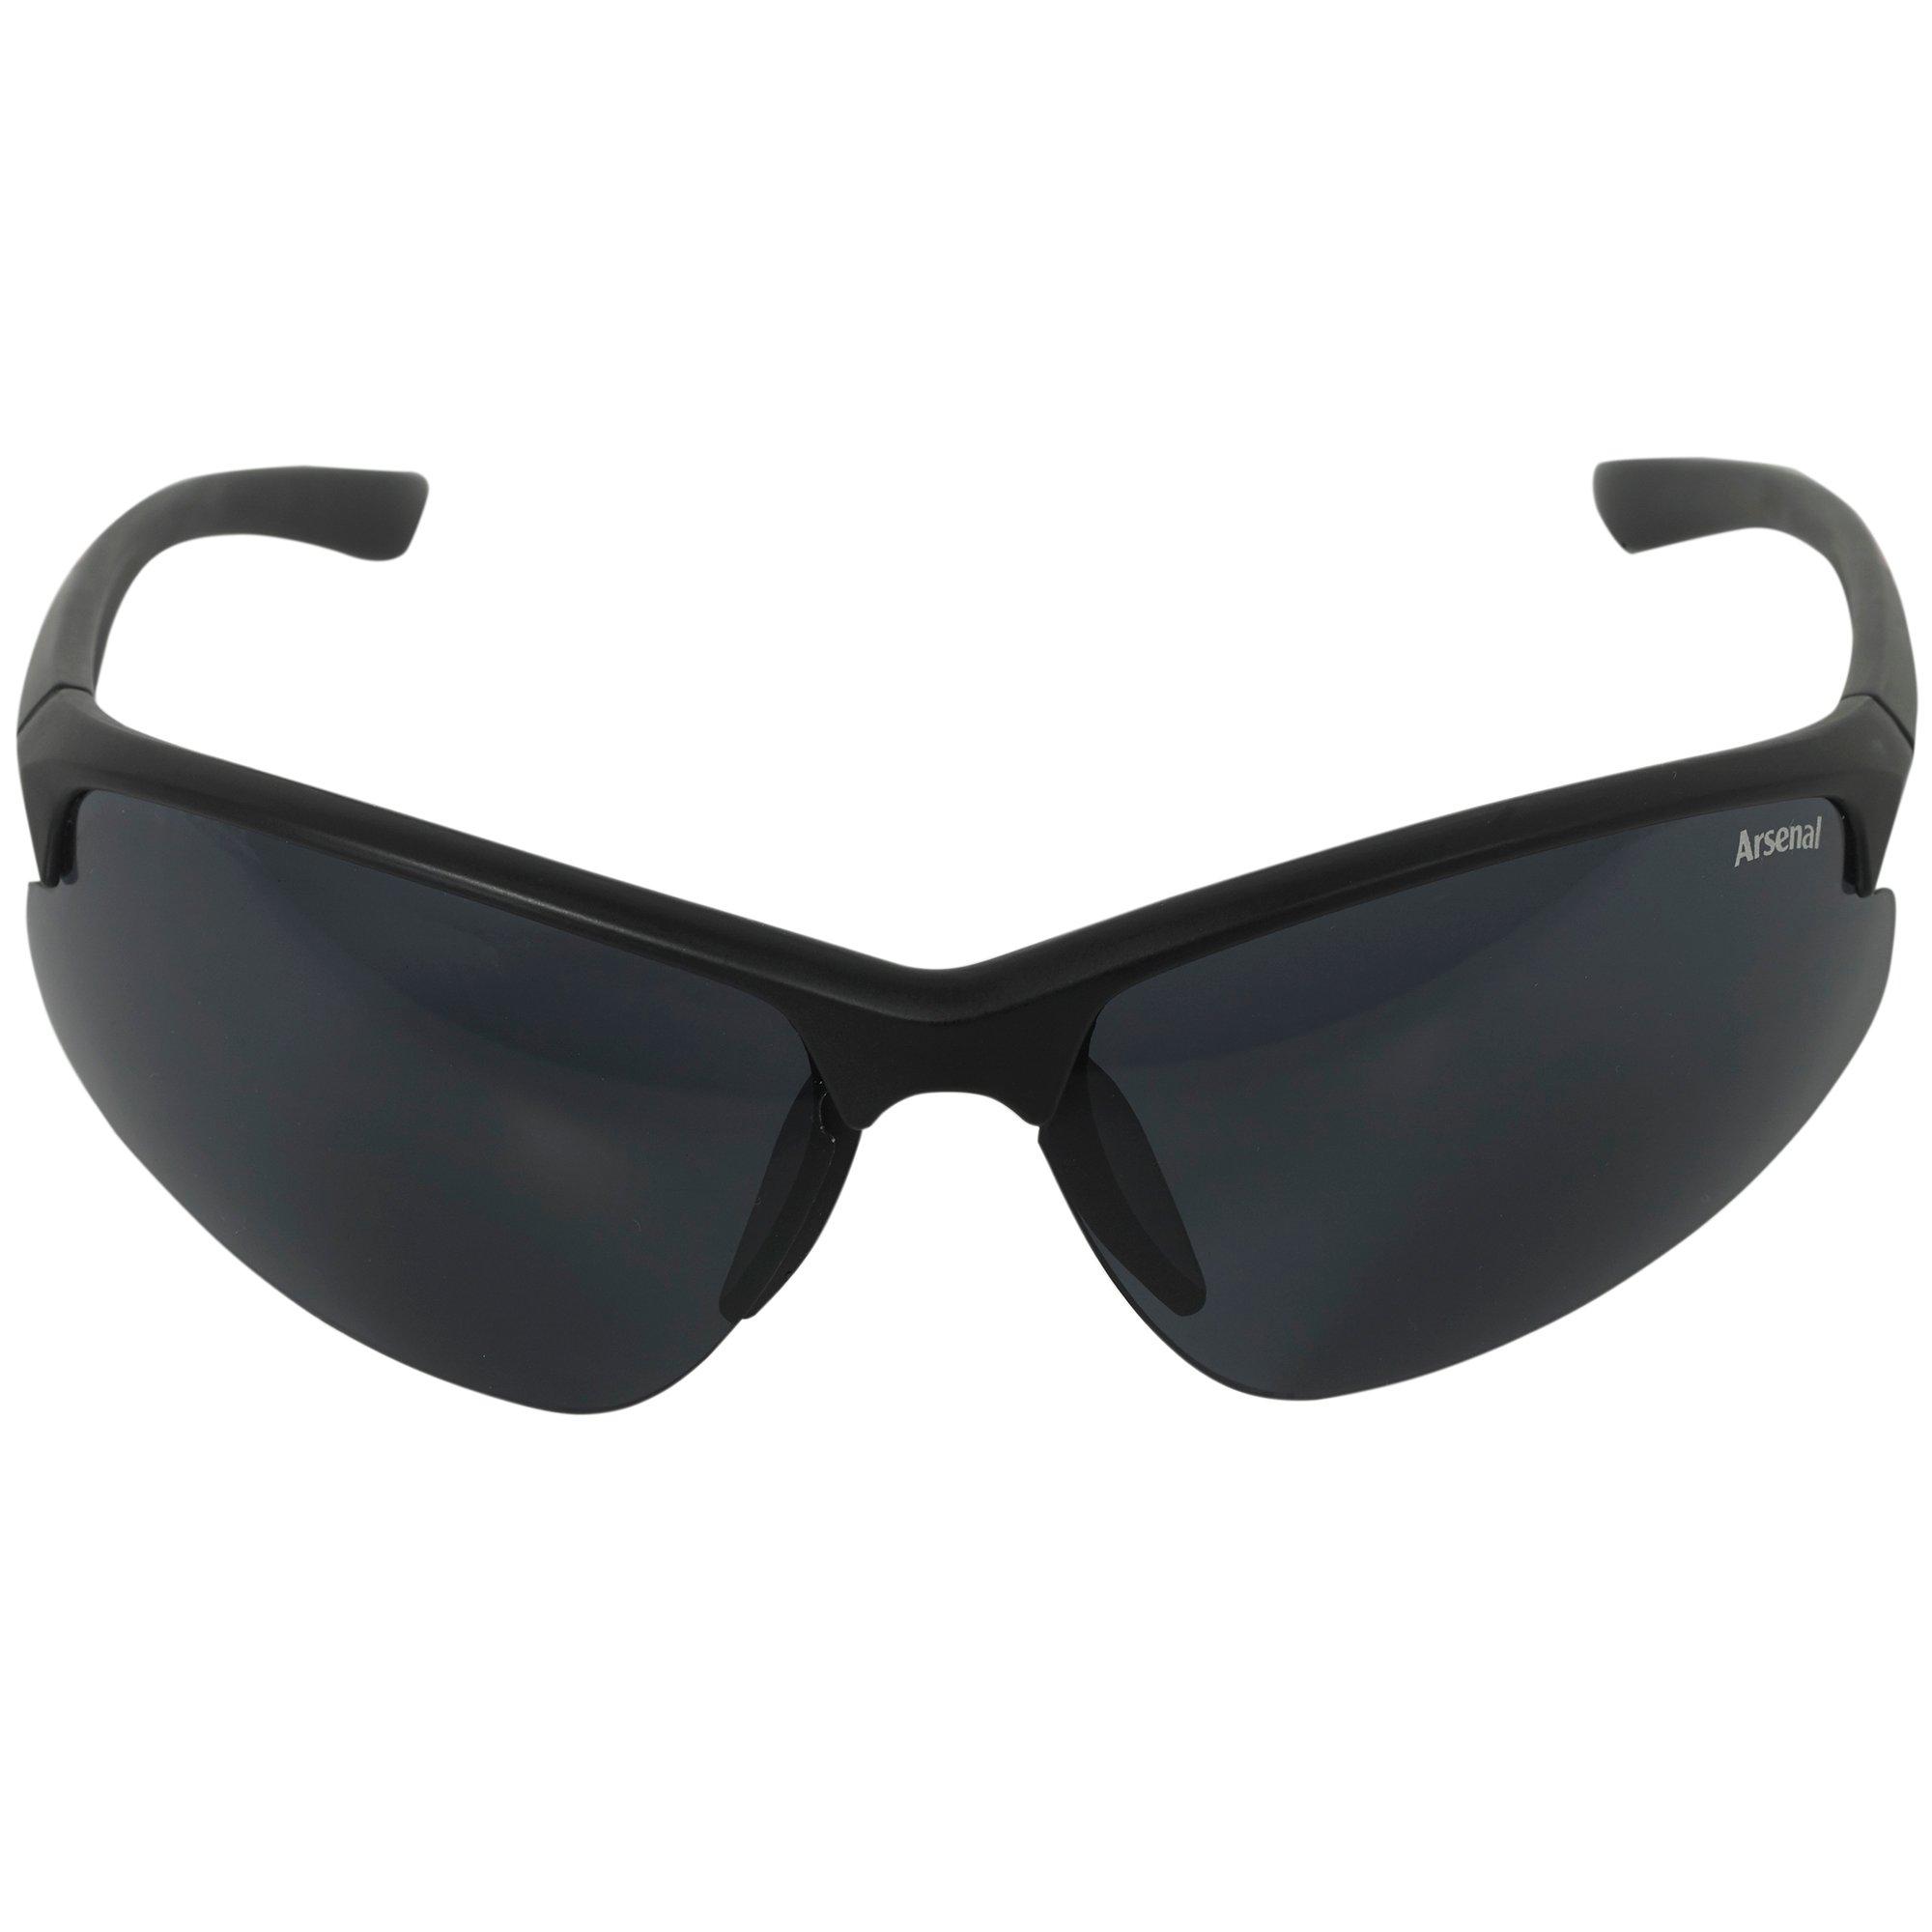 Sunglasses Accessories Mens Arsenal Direct - retro white sunglasses roblox code